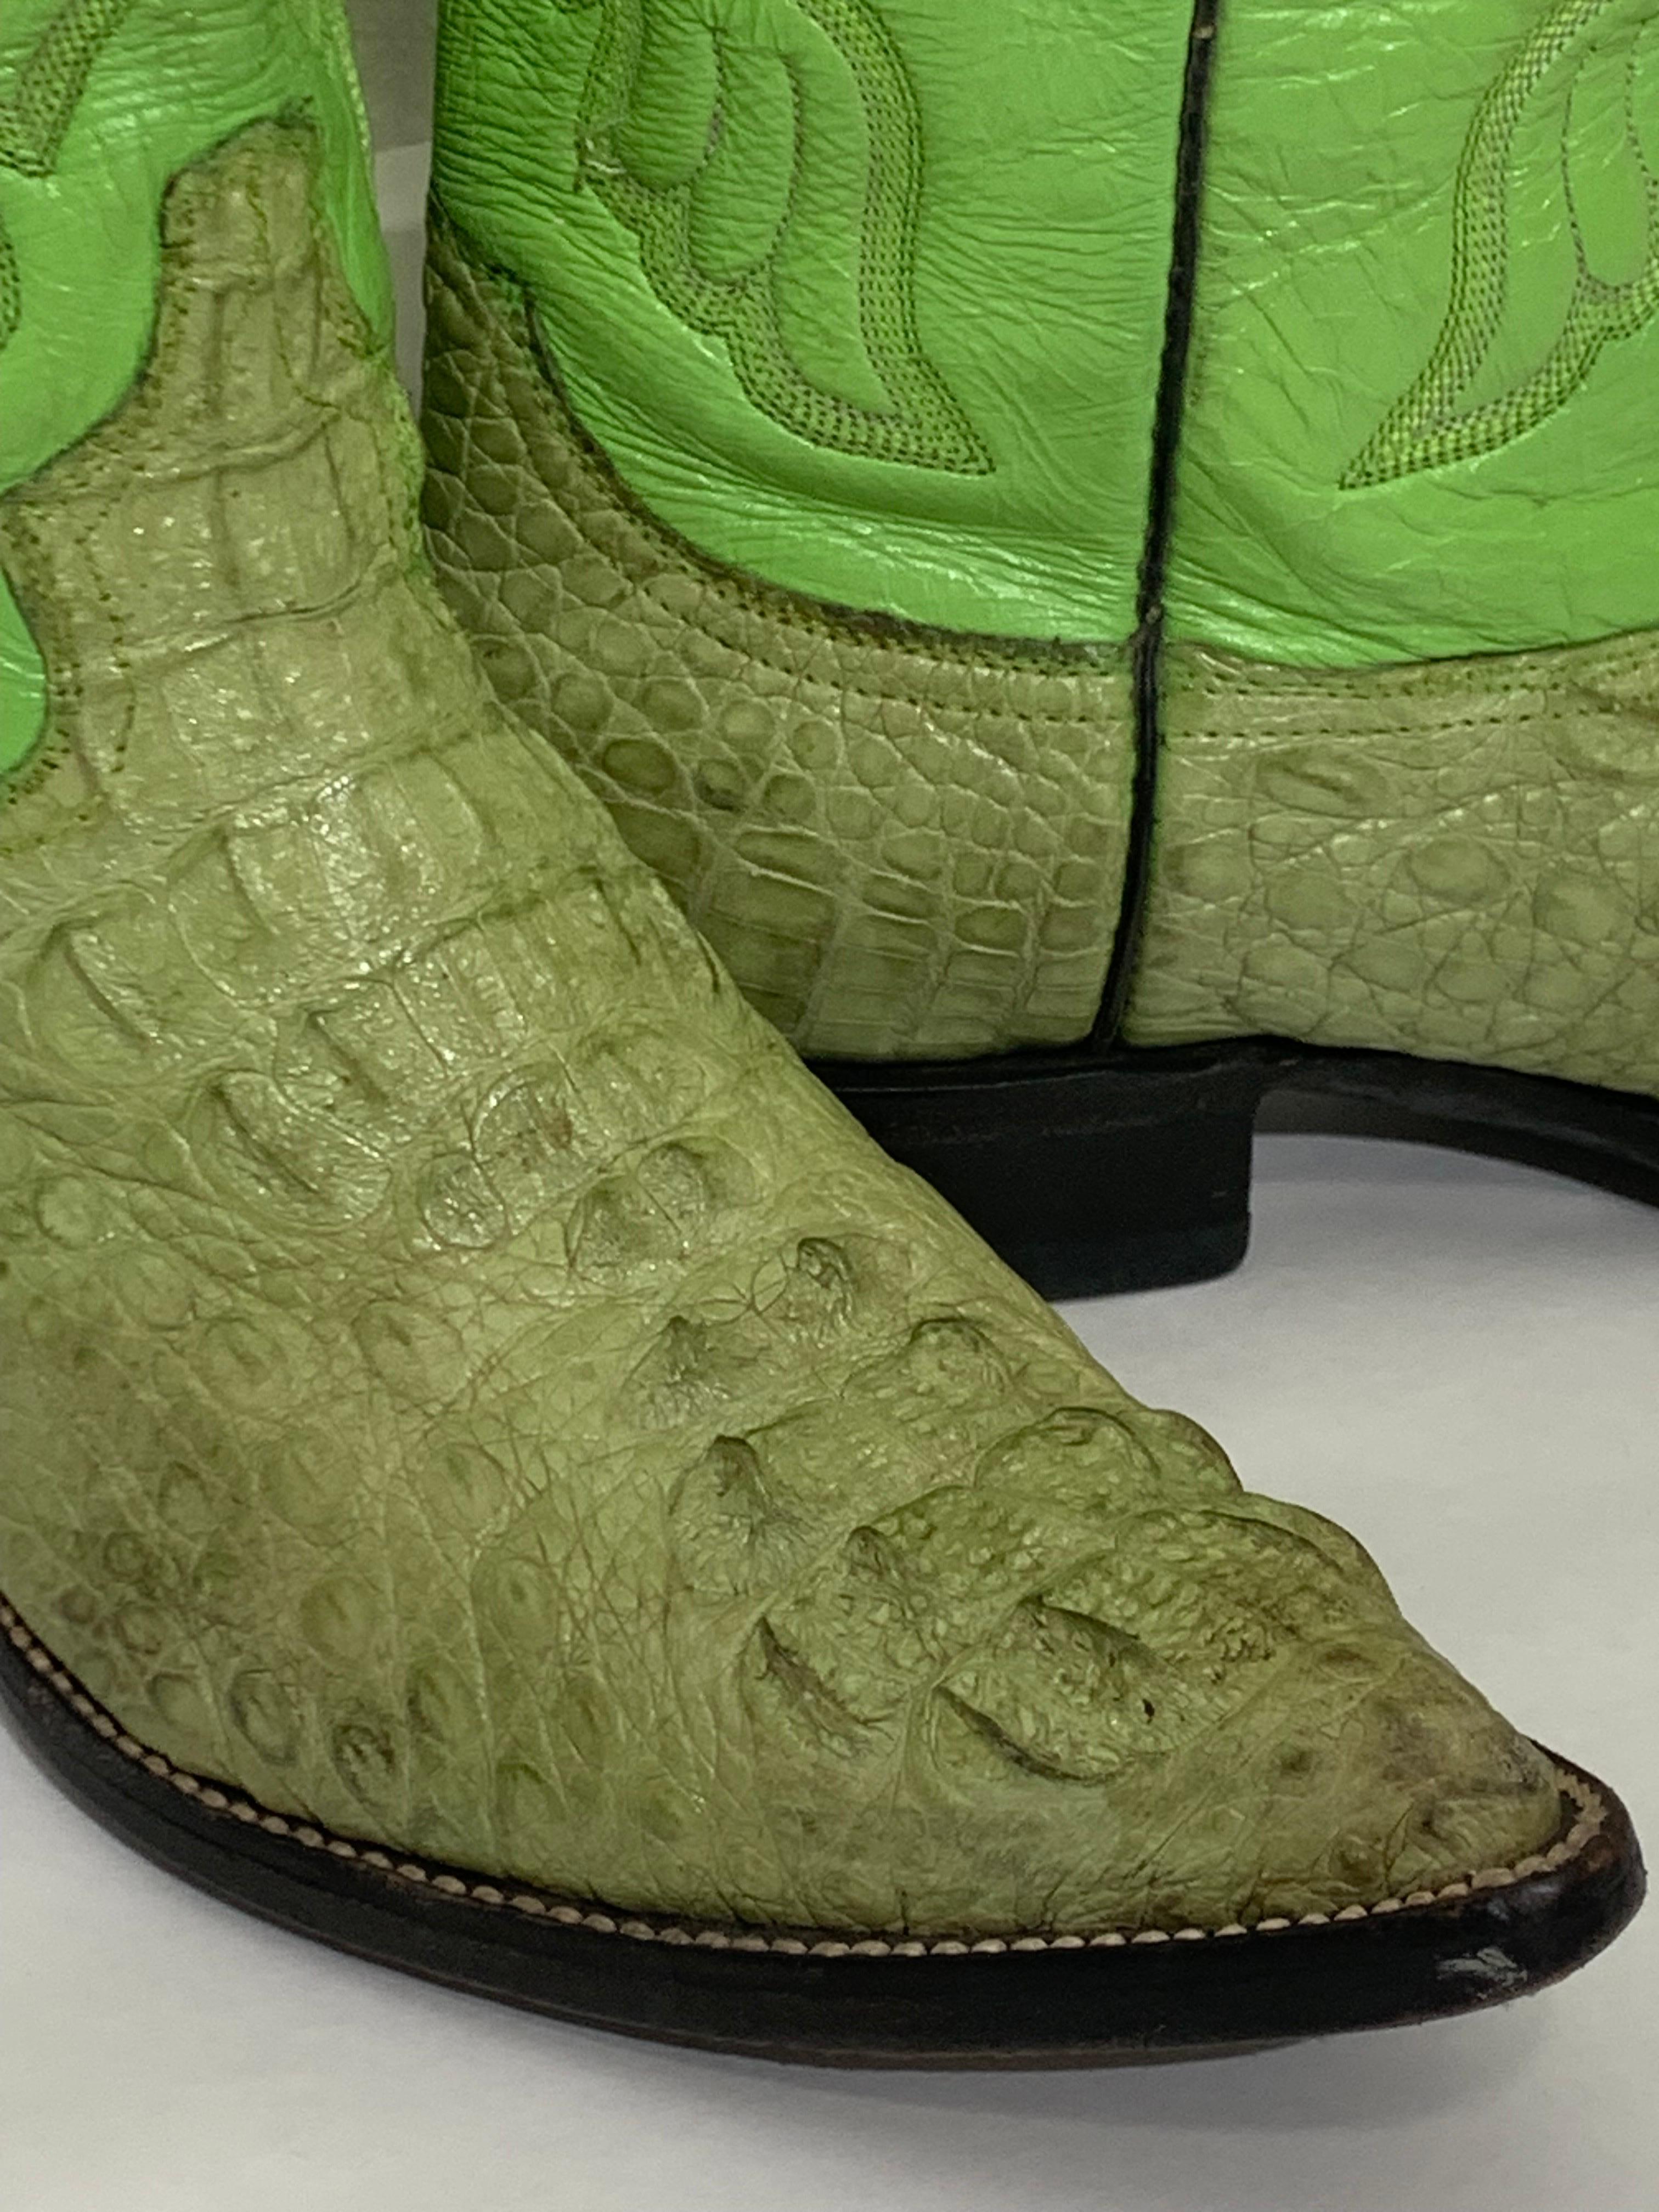 Western Cowboystiefel von Gecko aus grünem Leder und Krokodil, US Größe 8 Herren im Angebot